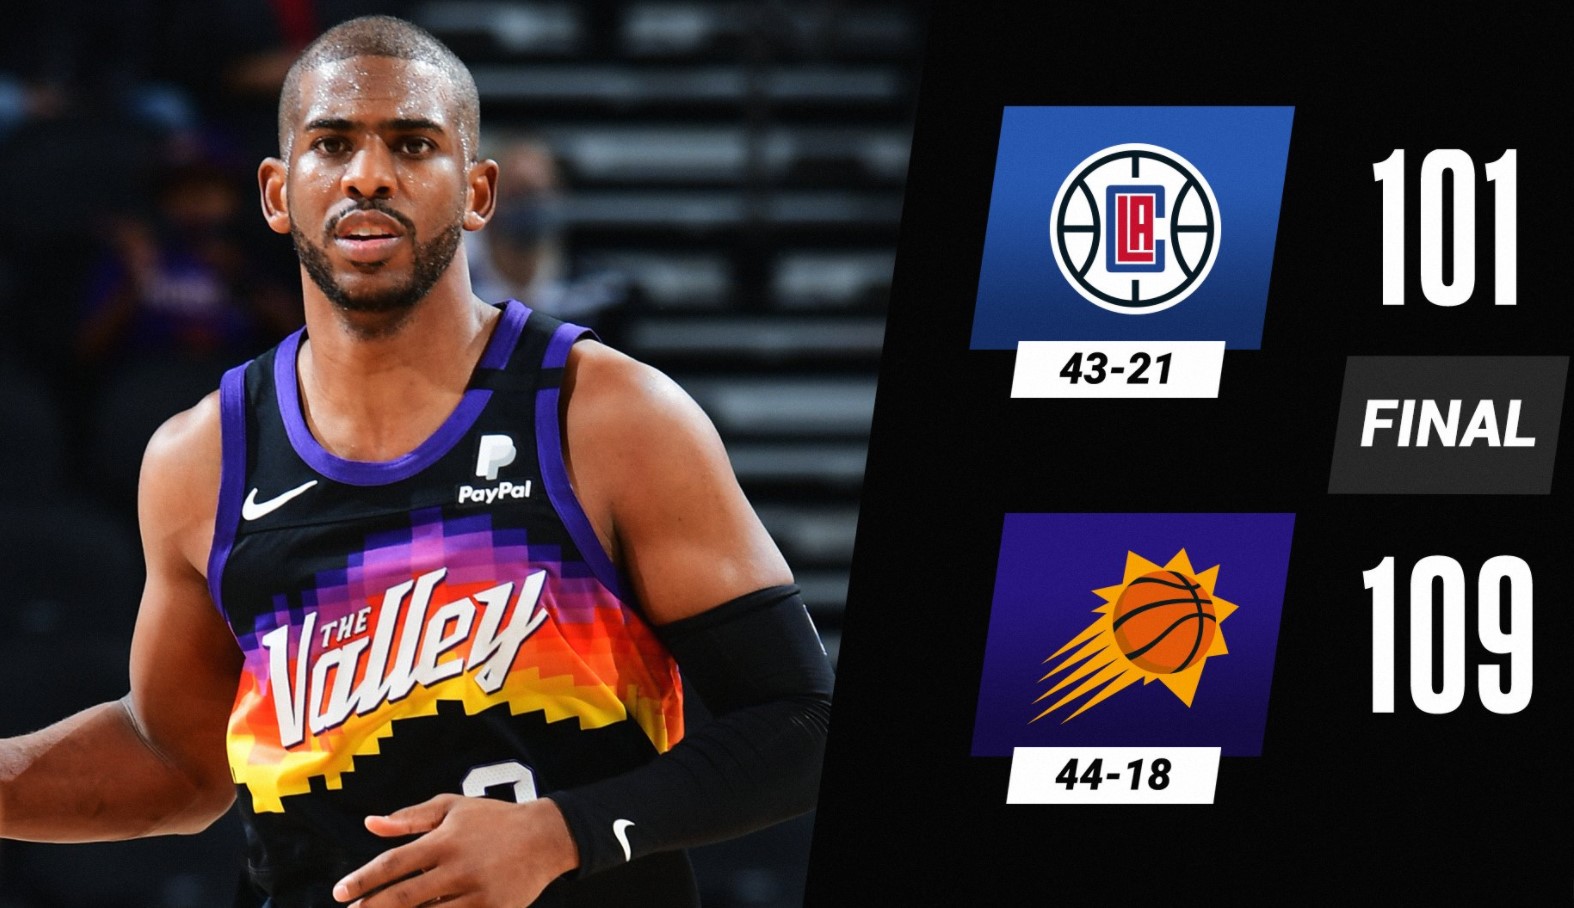 Kết quả bóng rổ NBA 2021 hôm nay 29/04: Phoenix Suns vững bước vào Playoffs - Ảnh 3